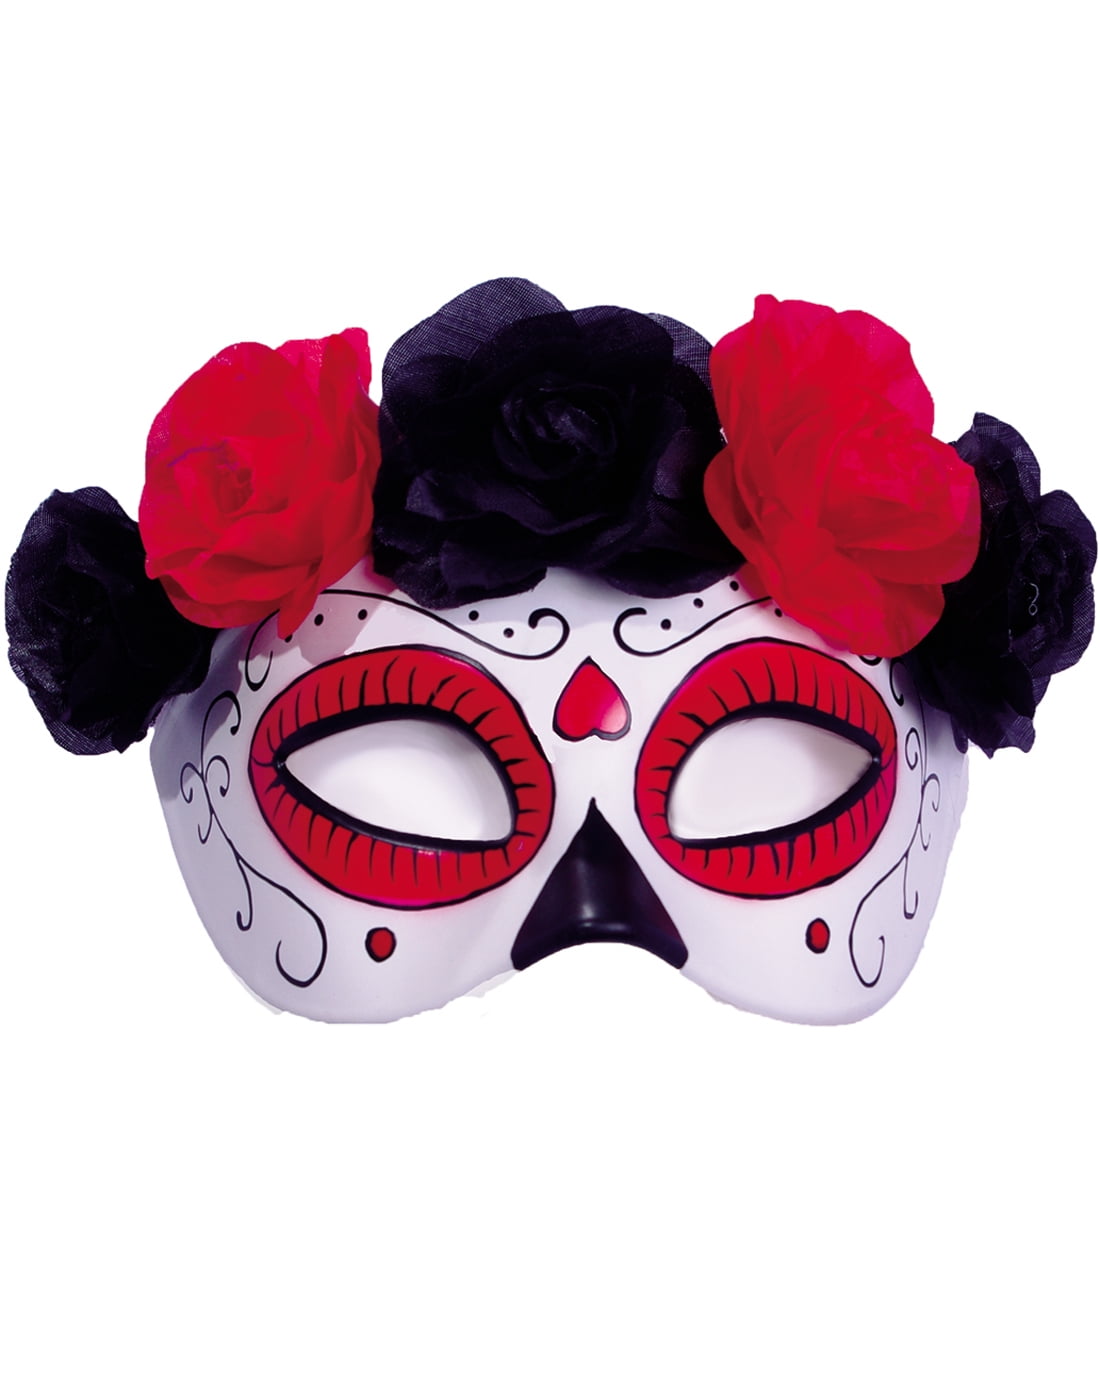 Flower Headband Mexican Sugar Skull Mask Dead Set Valeria Mask Lace Gloves 